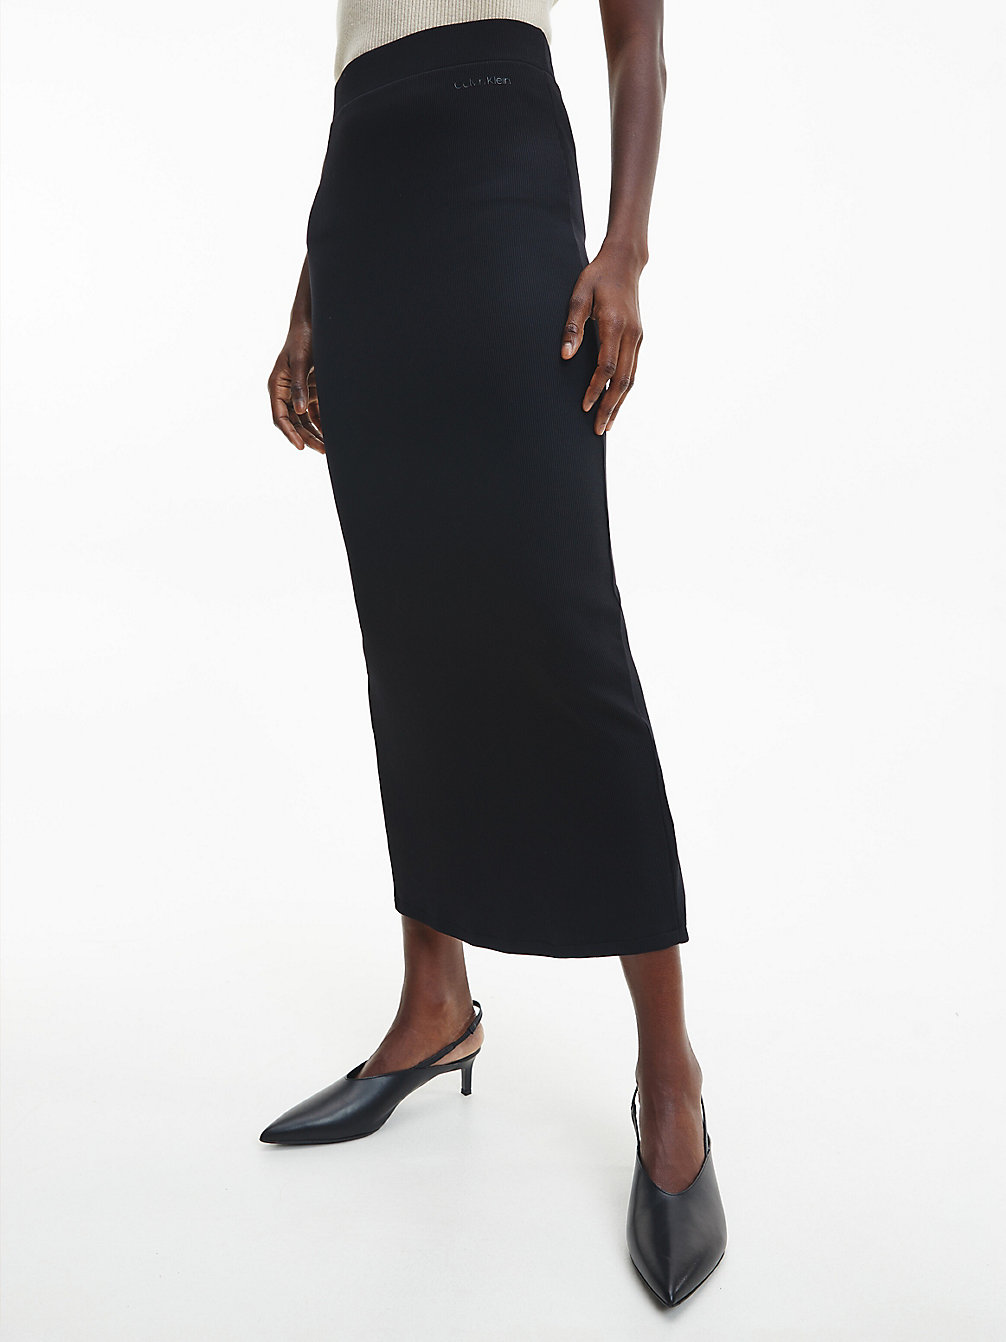 CK BLACK Slim Maxi Bodycon Skirt undefined women Calvin Klein